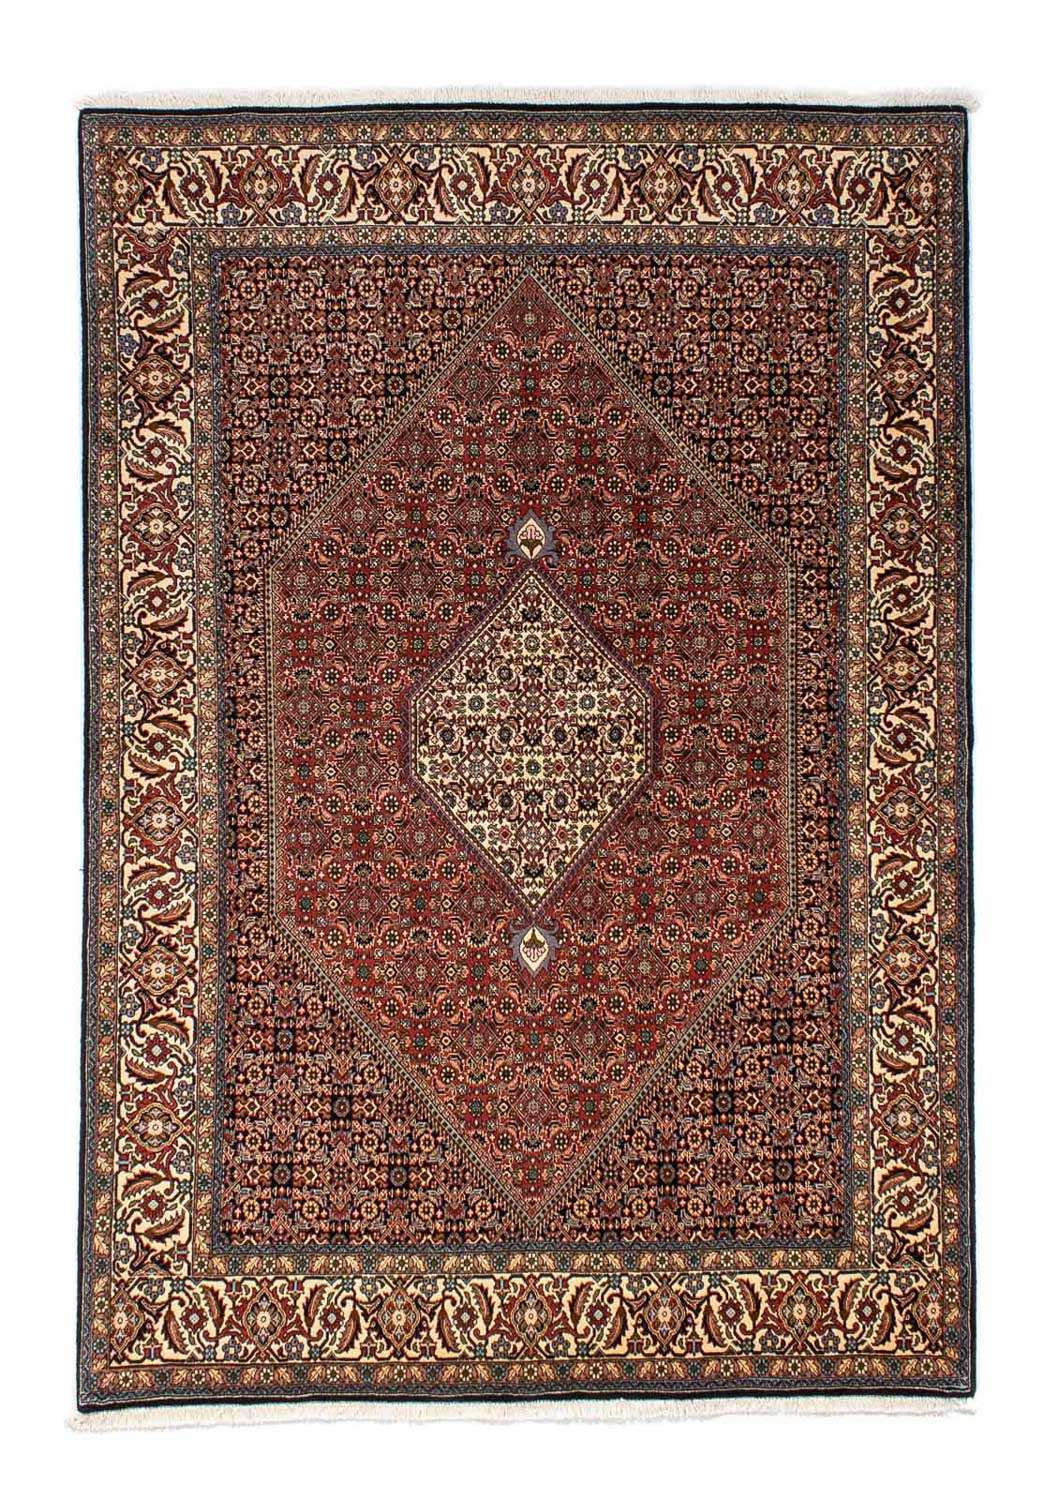 Perzisch tapijt - Bijar - 250 x 173 cm - bruin